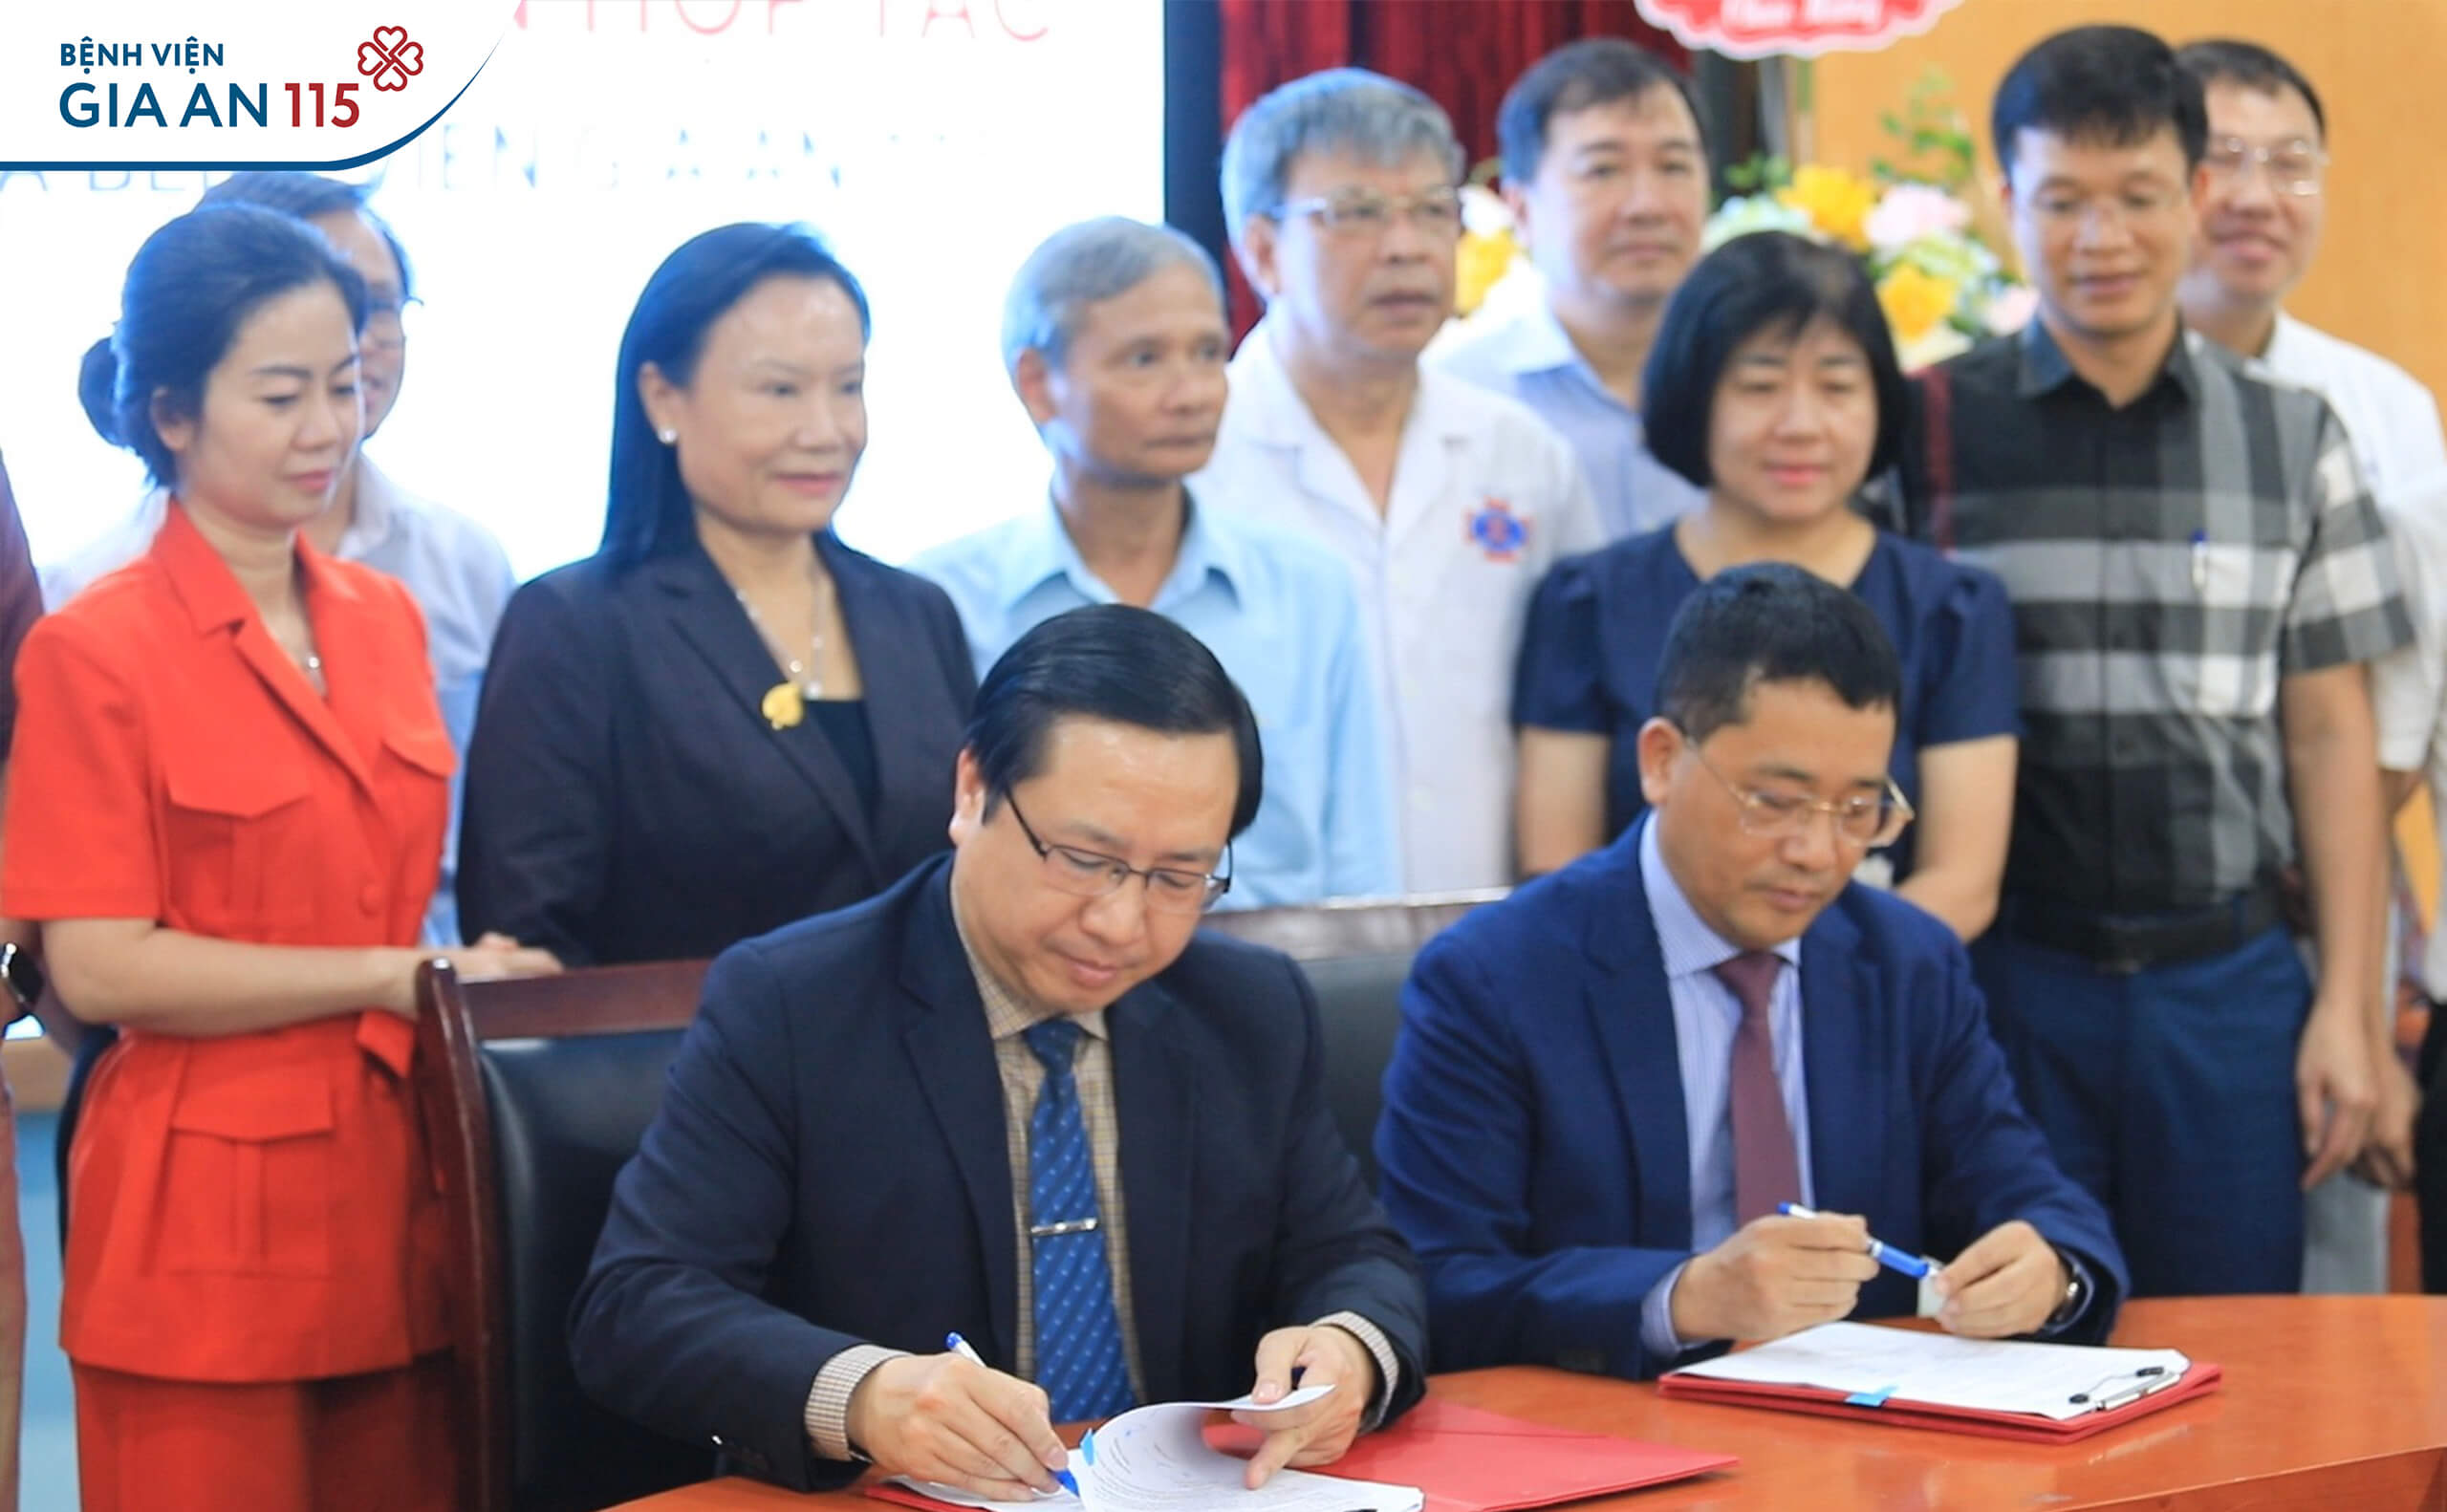 TS.BS Trương Vĩnh Long - Giám đốc Bệnh viện Gia An 115 và GS.TS.BS Lê Văn Quảng - Giám đốc Bệnh viện K ký kết thỏa thuận hợp tác